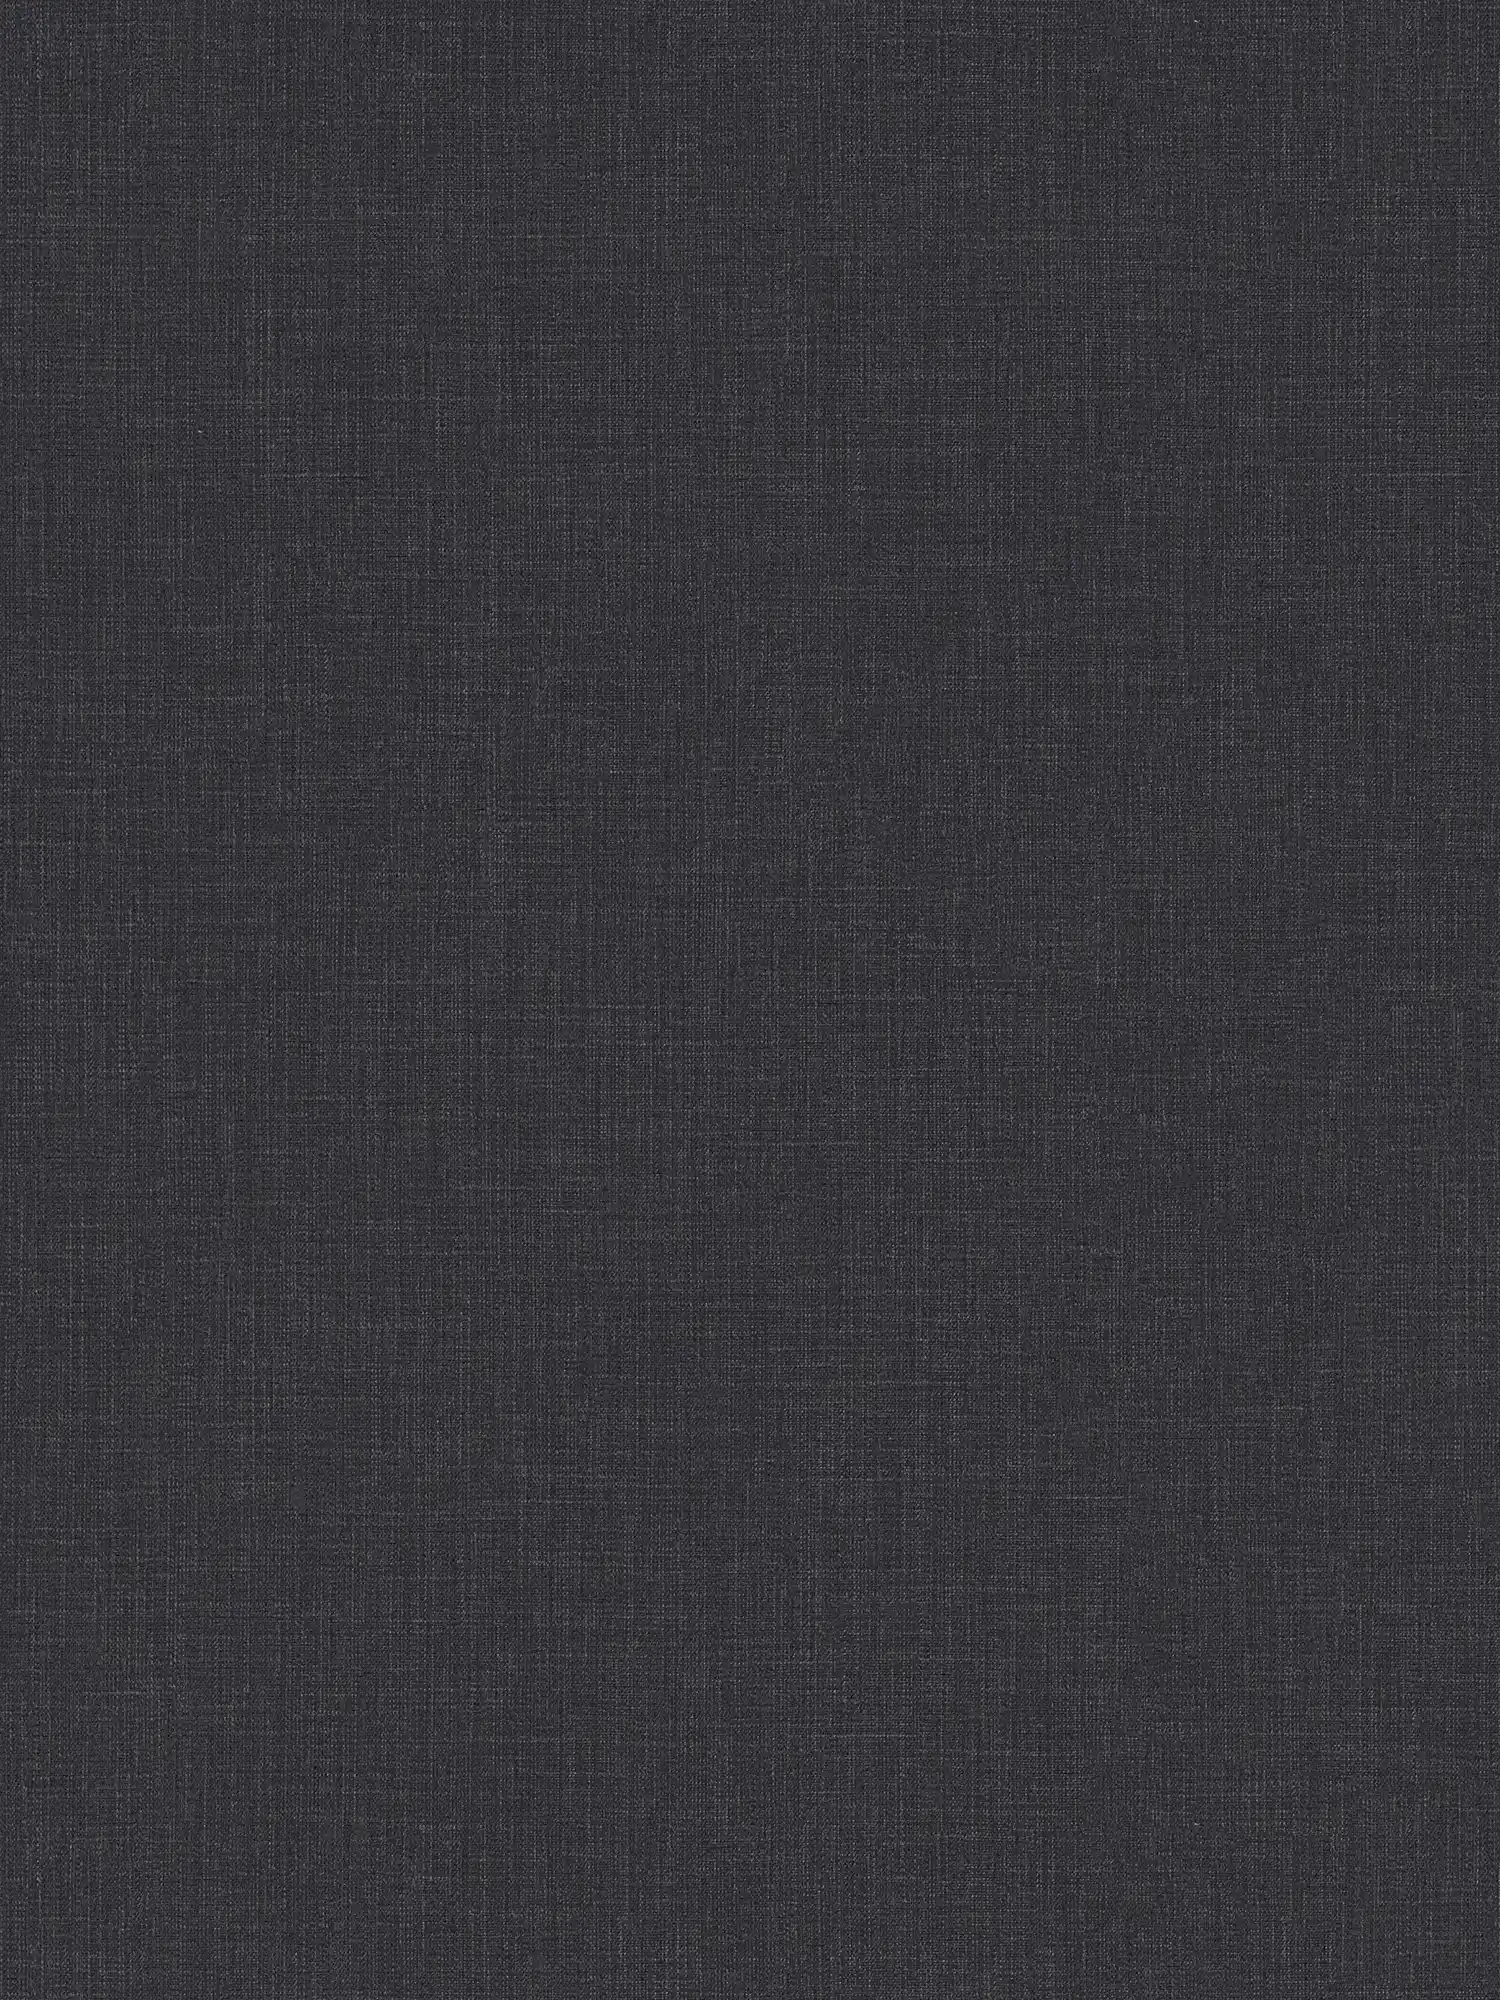 Carta da parati in tessuto non tessuto screziata con aspetto tessile - blu, grigio, bianco
